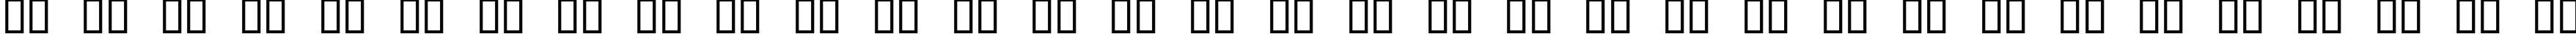 Пример написания русского алфавита шрифтом Nubian Regular